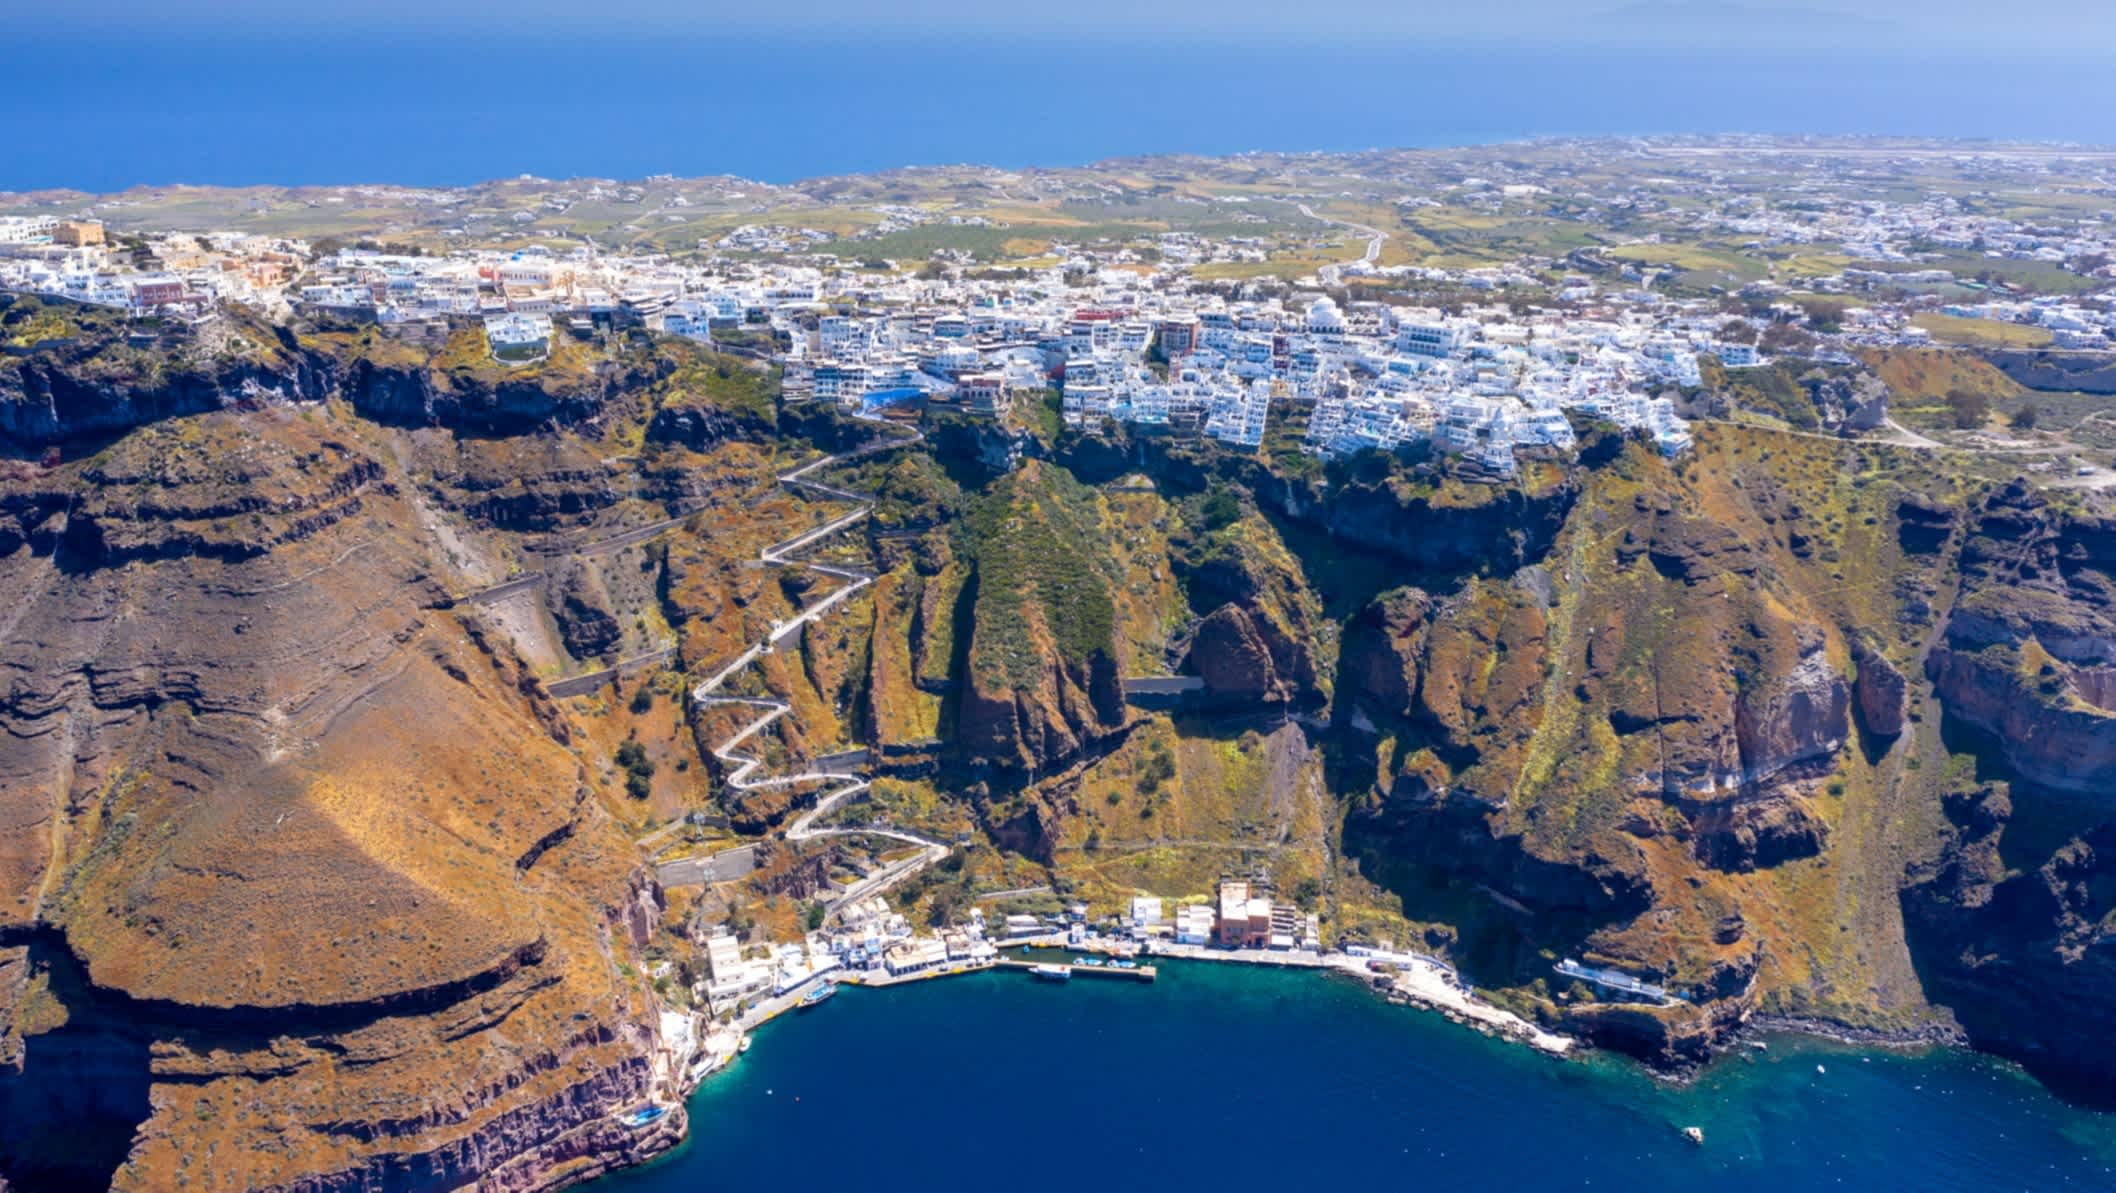 Fira Stadt, mit Blick auf Caldera, Vulkan und Kreuzfahrtschiffe, Santorini, Griechenland.